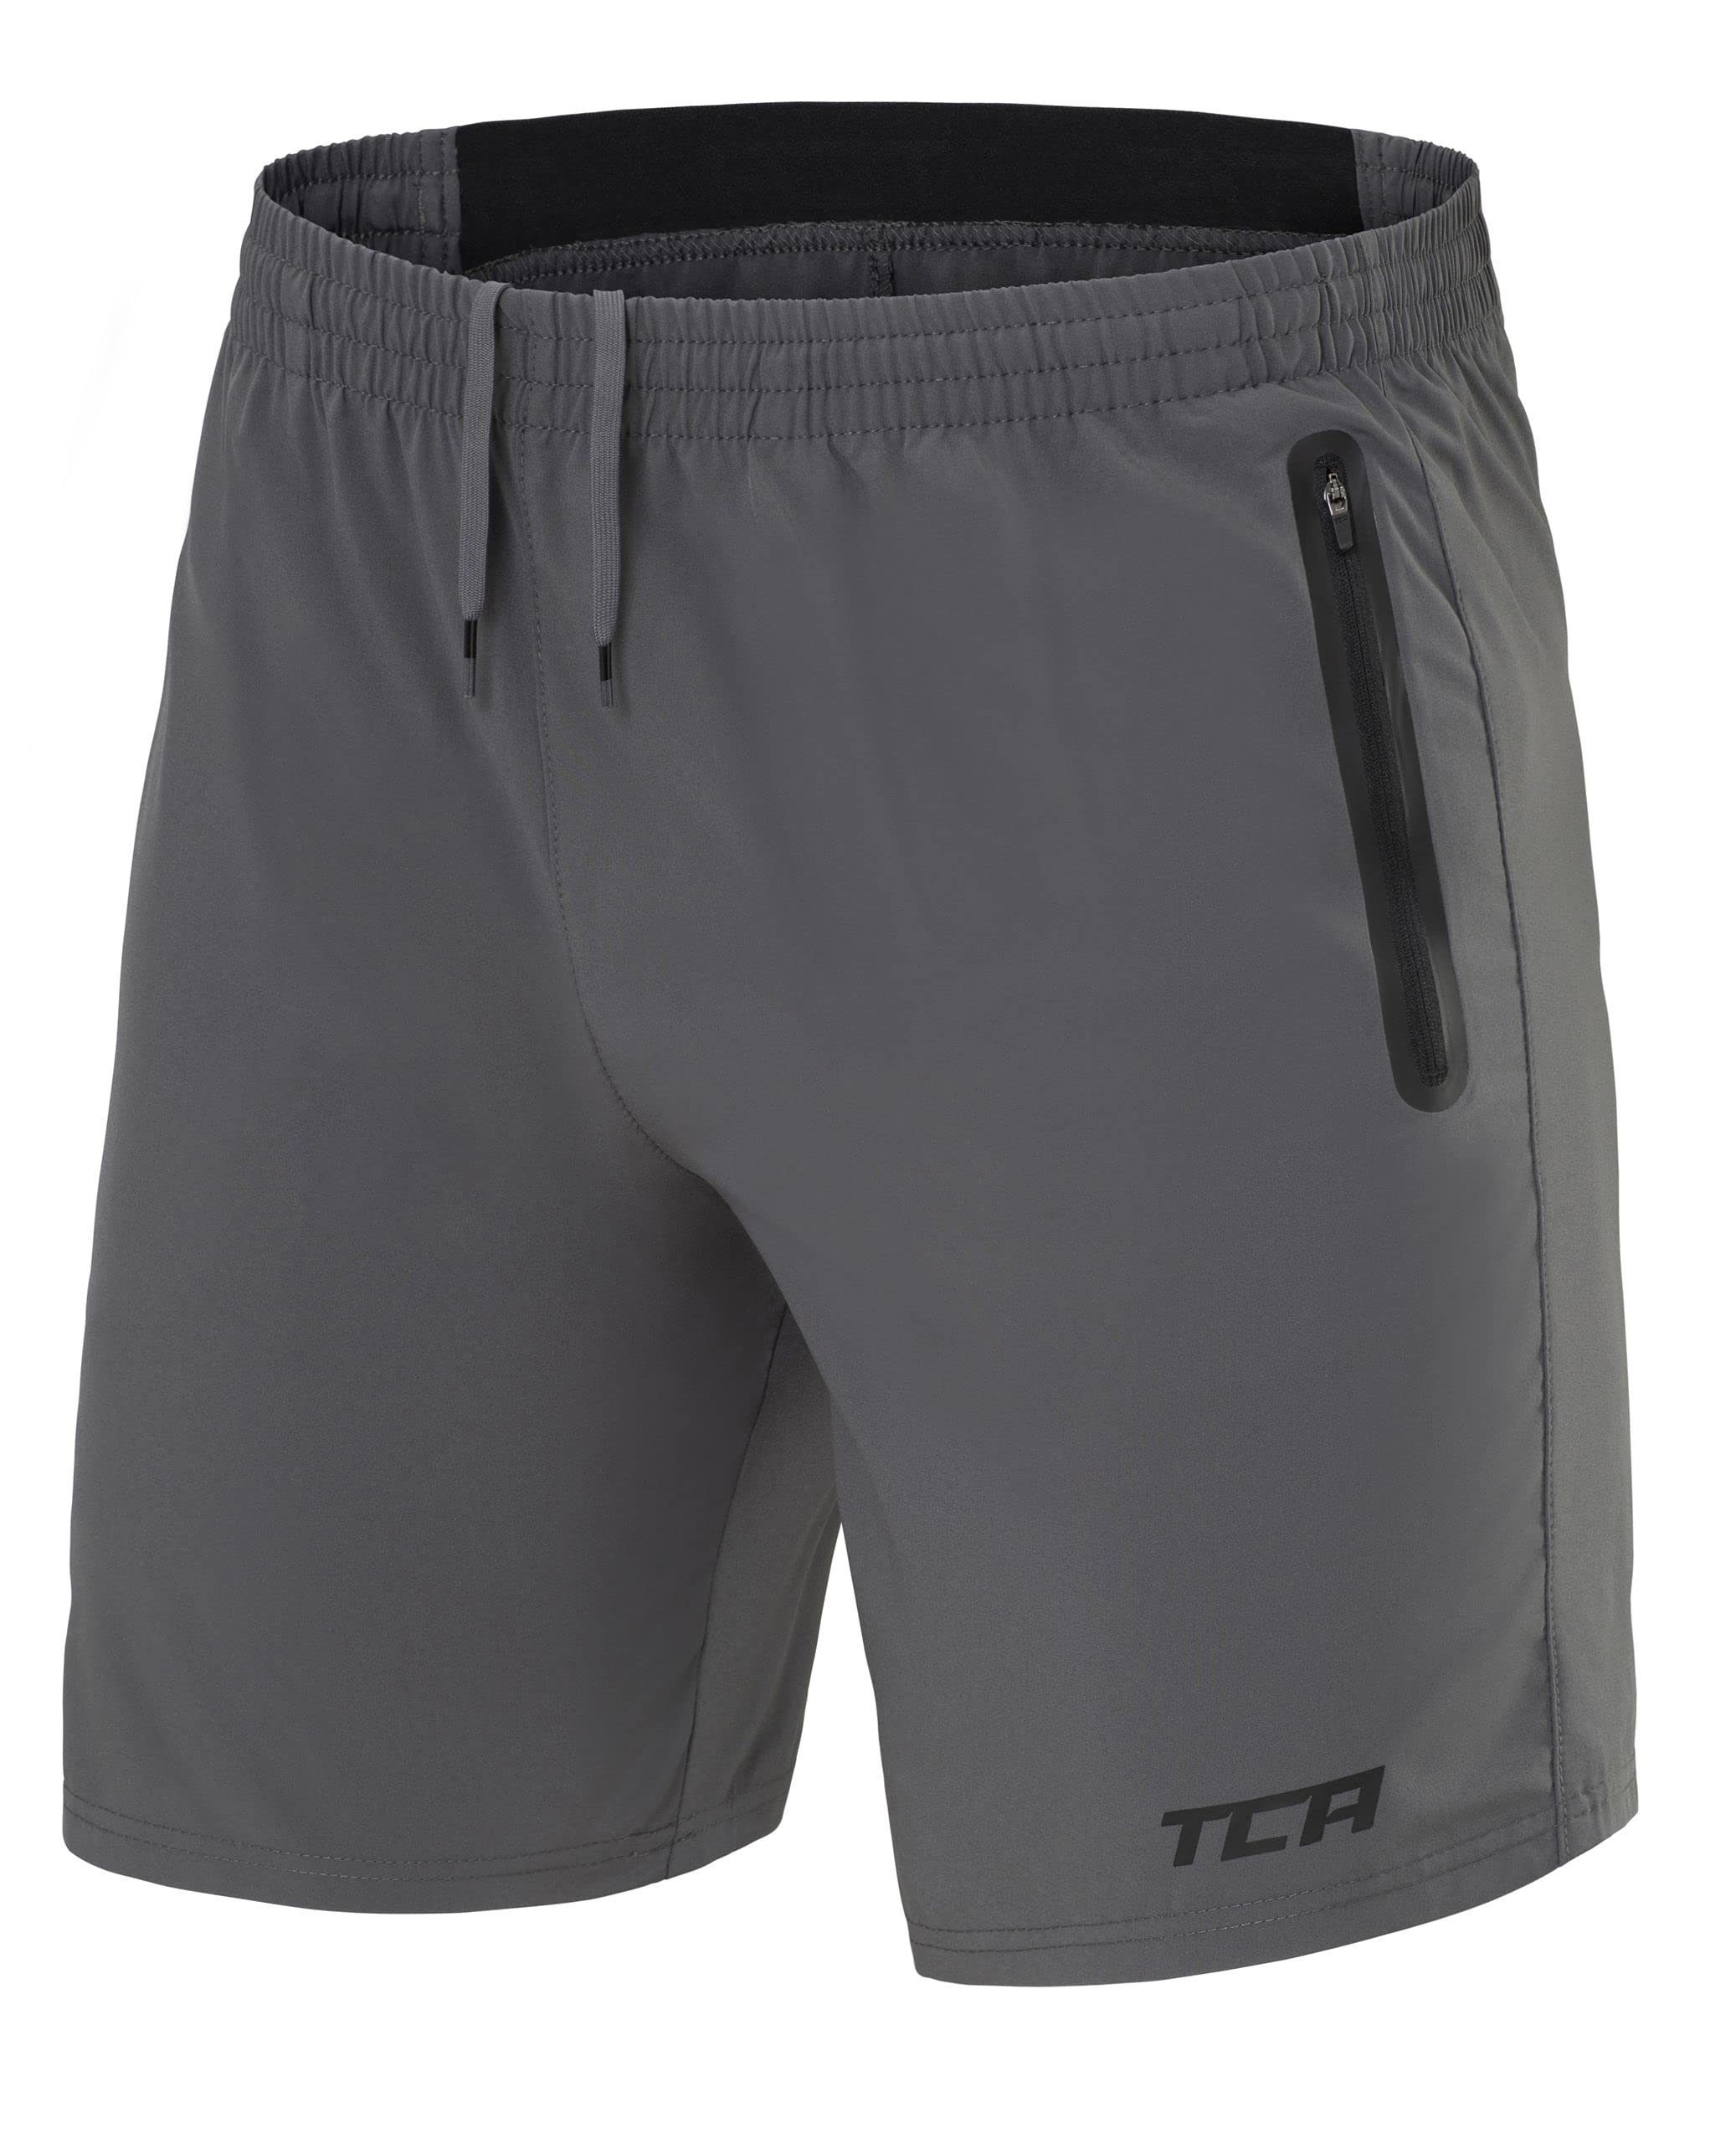 TCA Trainingsshorts TCA Herren Elite Tech Laufhose mit Reißverschlusstaschen - Grau, S